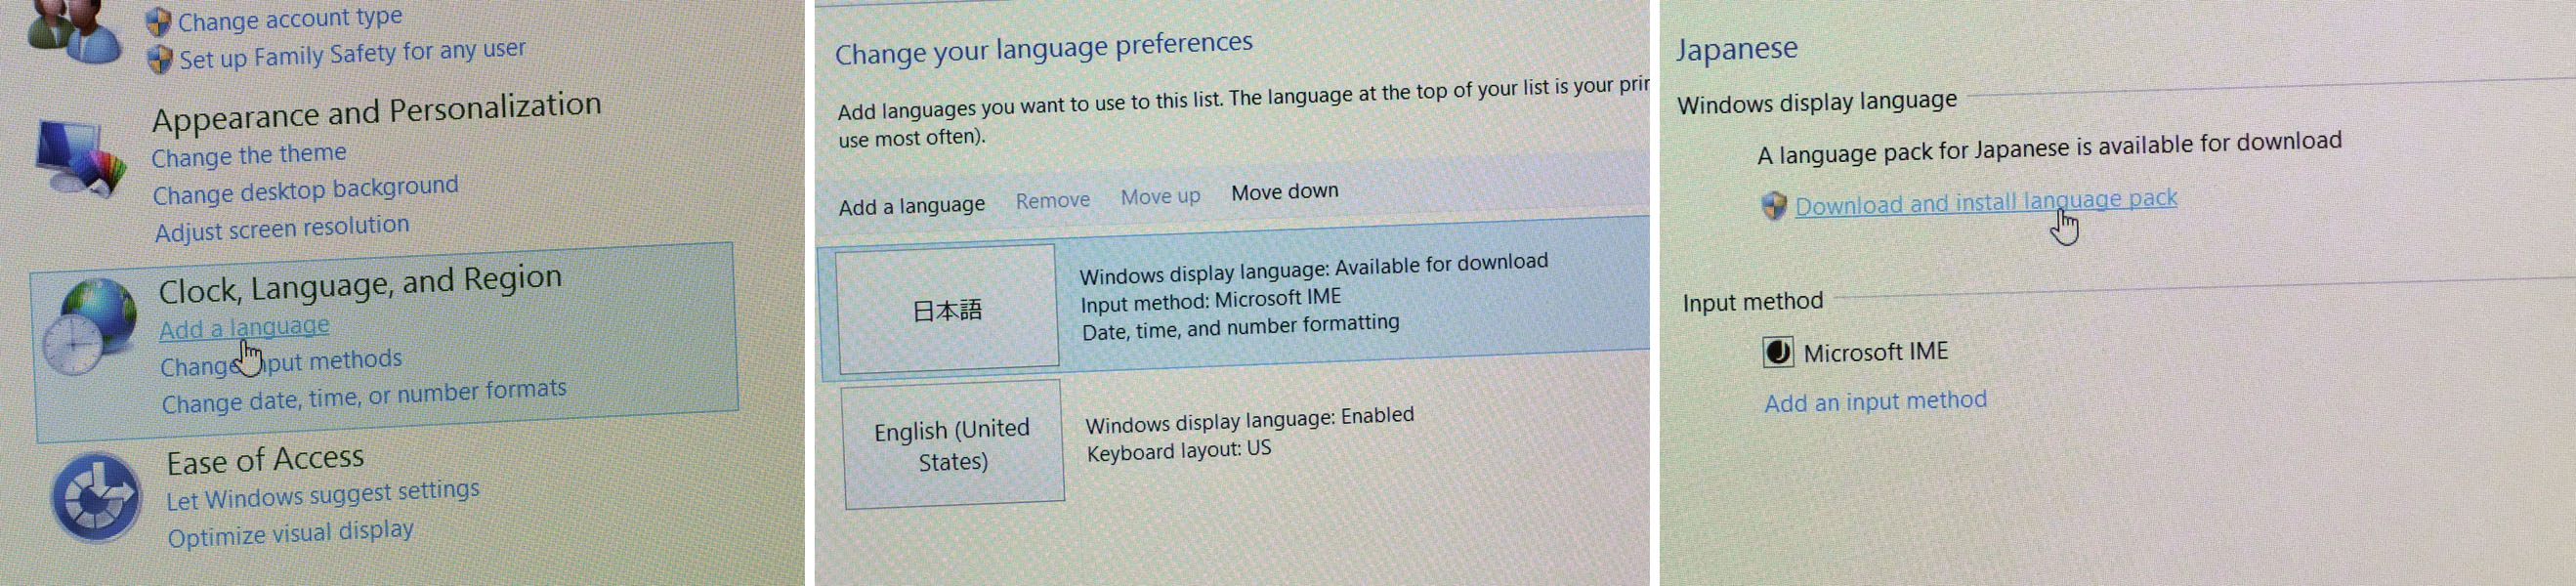 Windows 8英語版の日本語化手順。 コントロールパネルの言語を選び、日本語を選択し、言語パックをダウンロードする。